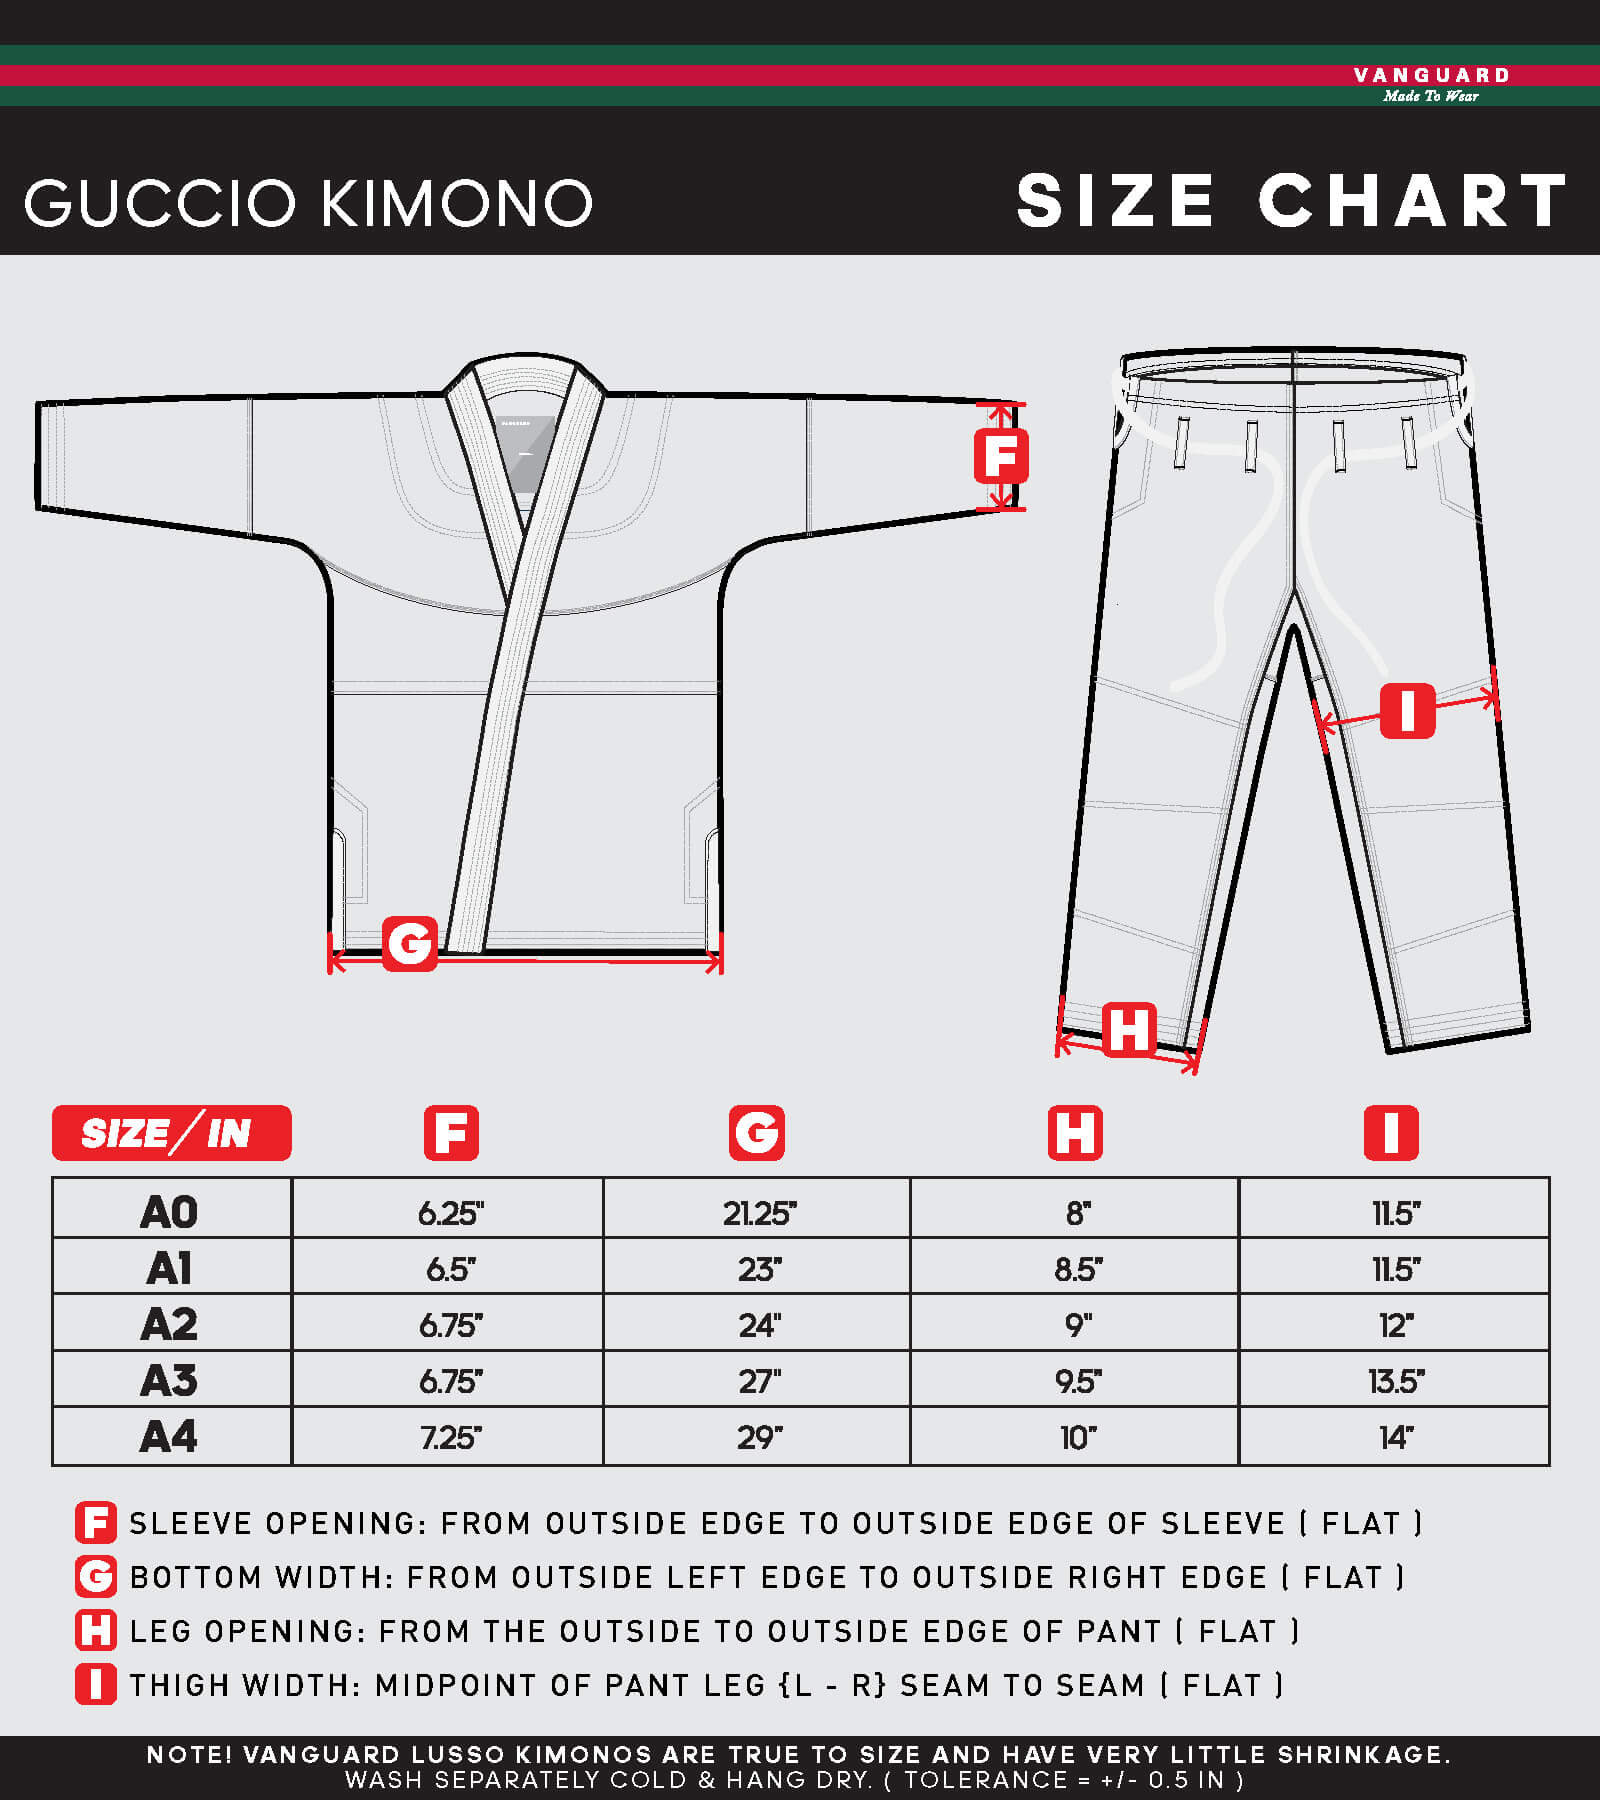 Guccio Kimono Size Chart